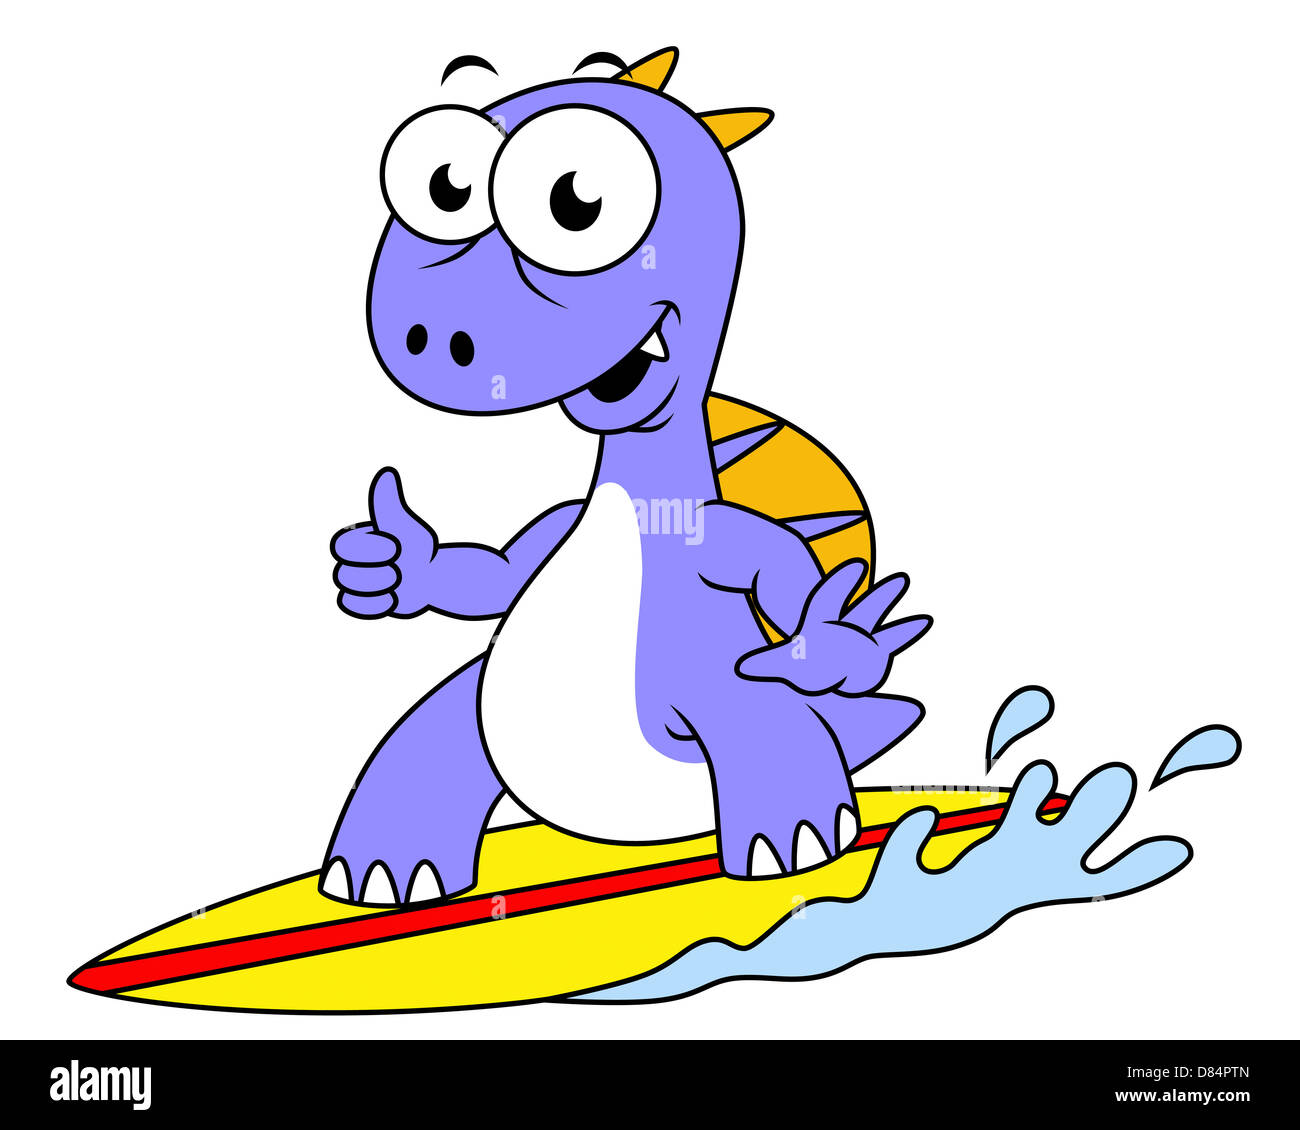 Illustration of a surfing Spinosaurus. Stock Photo